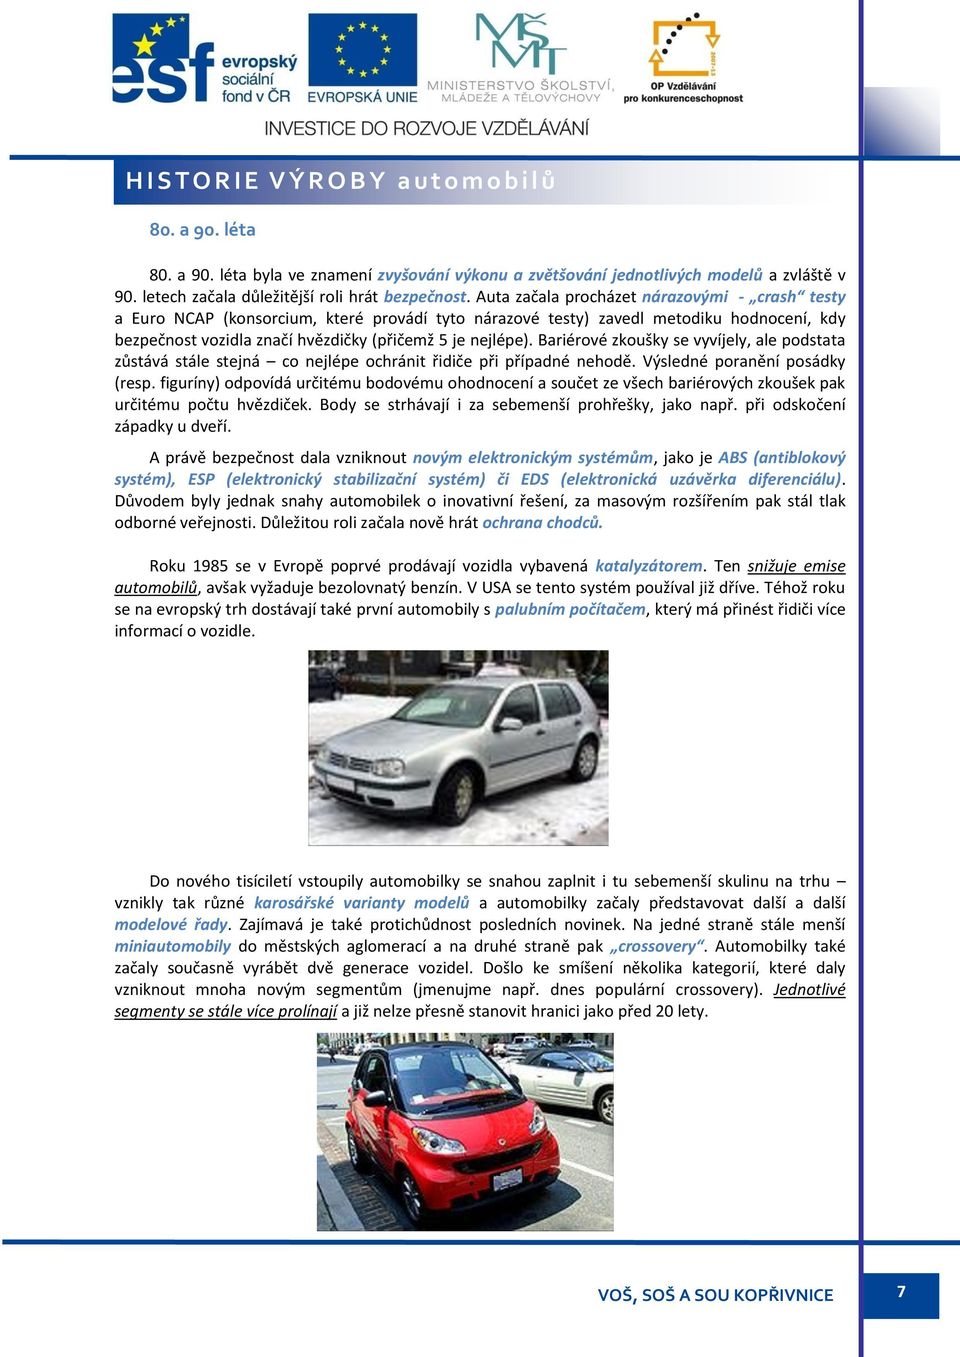 Auta začala procházet nárazovými - crash testy a Euro NCAP (konsorcium, které provádí tyto nárazové testy) zavedl metodiku hodnocení, kdy bezpečnost vozidla značí hvězdičky (přičemž 5 je nejlépe).